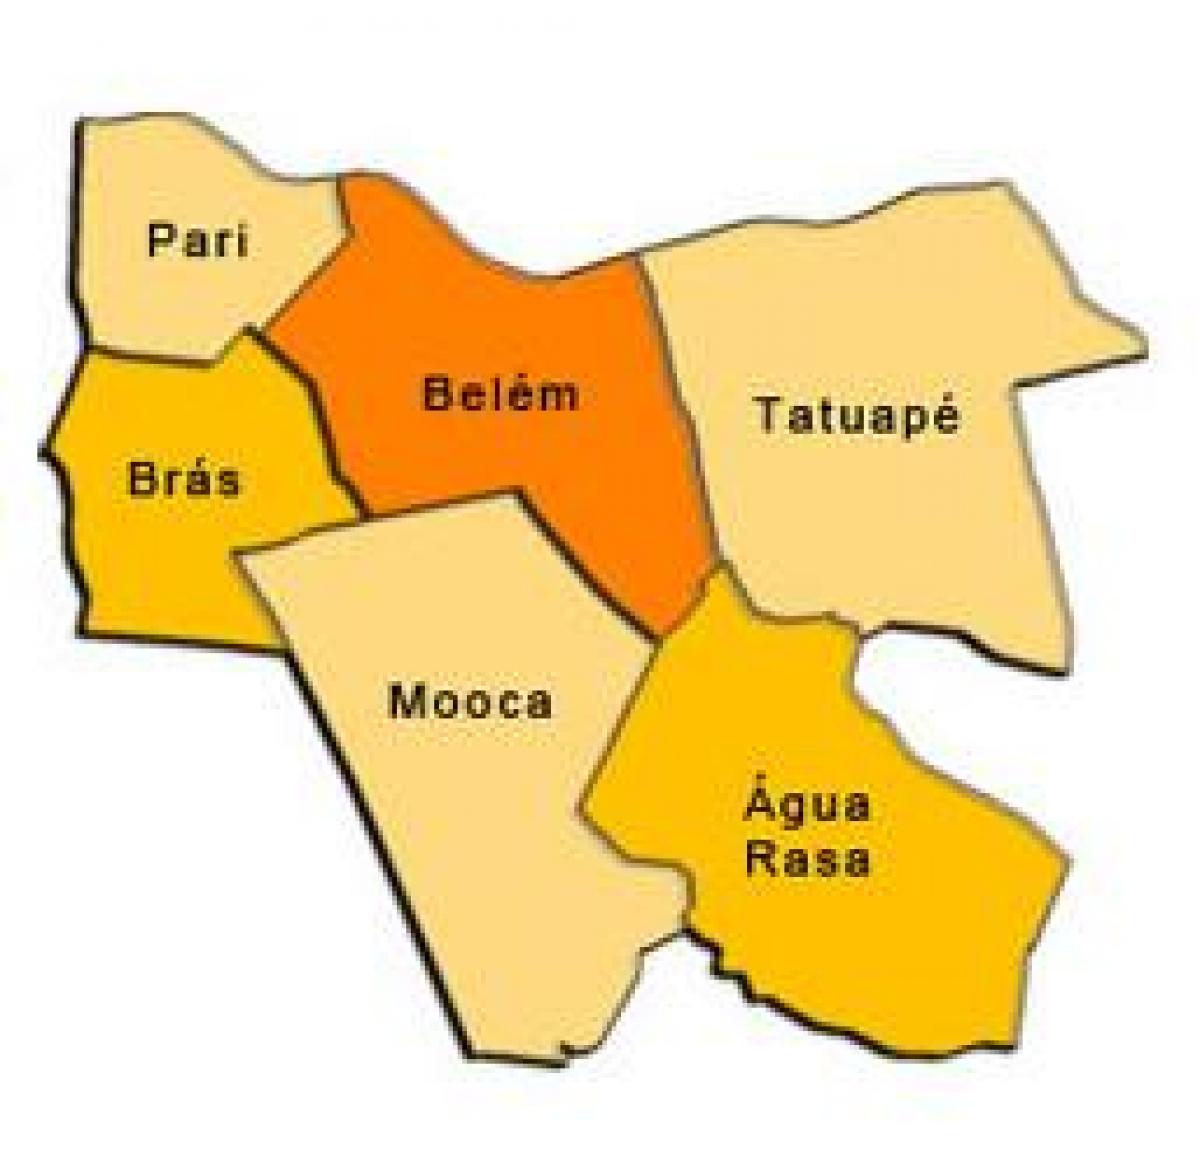 Mapa da Mooca sub-prefeitura